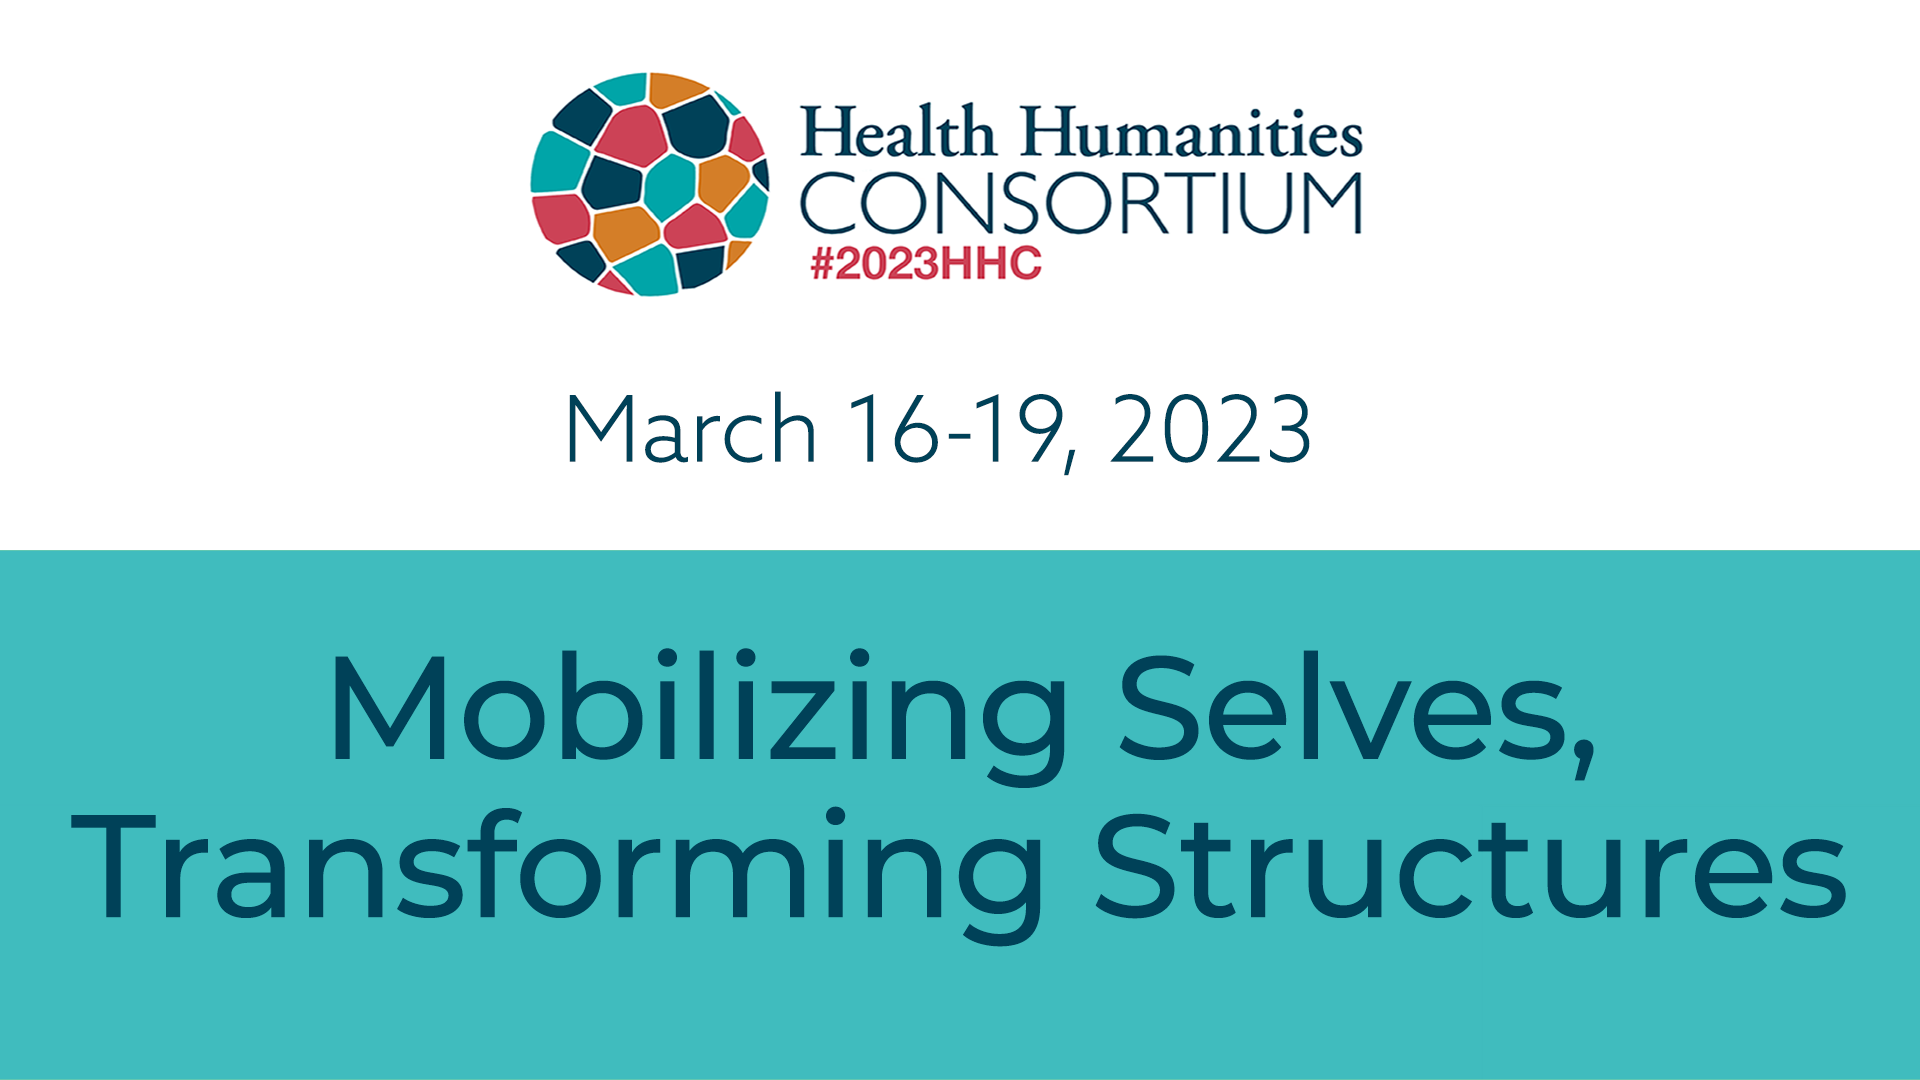 Health Humanities Consortium